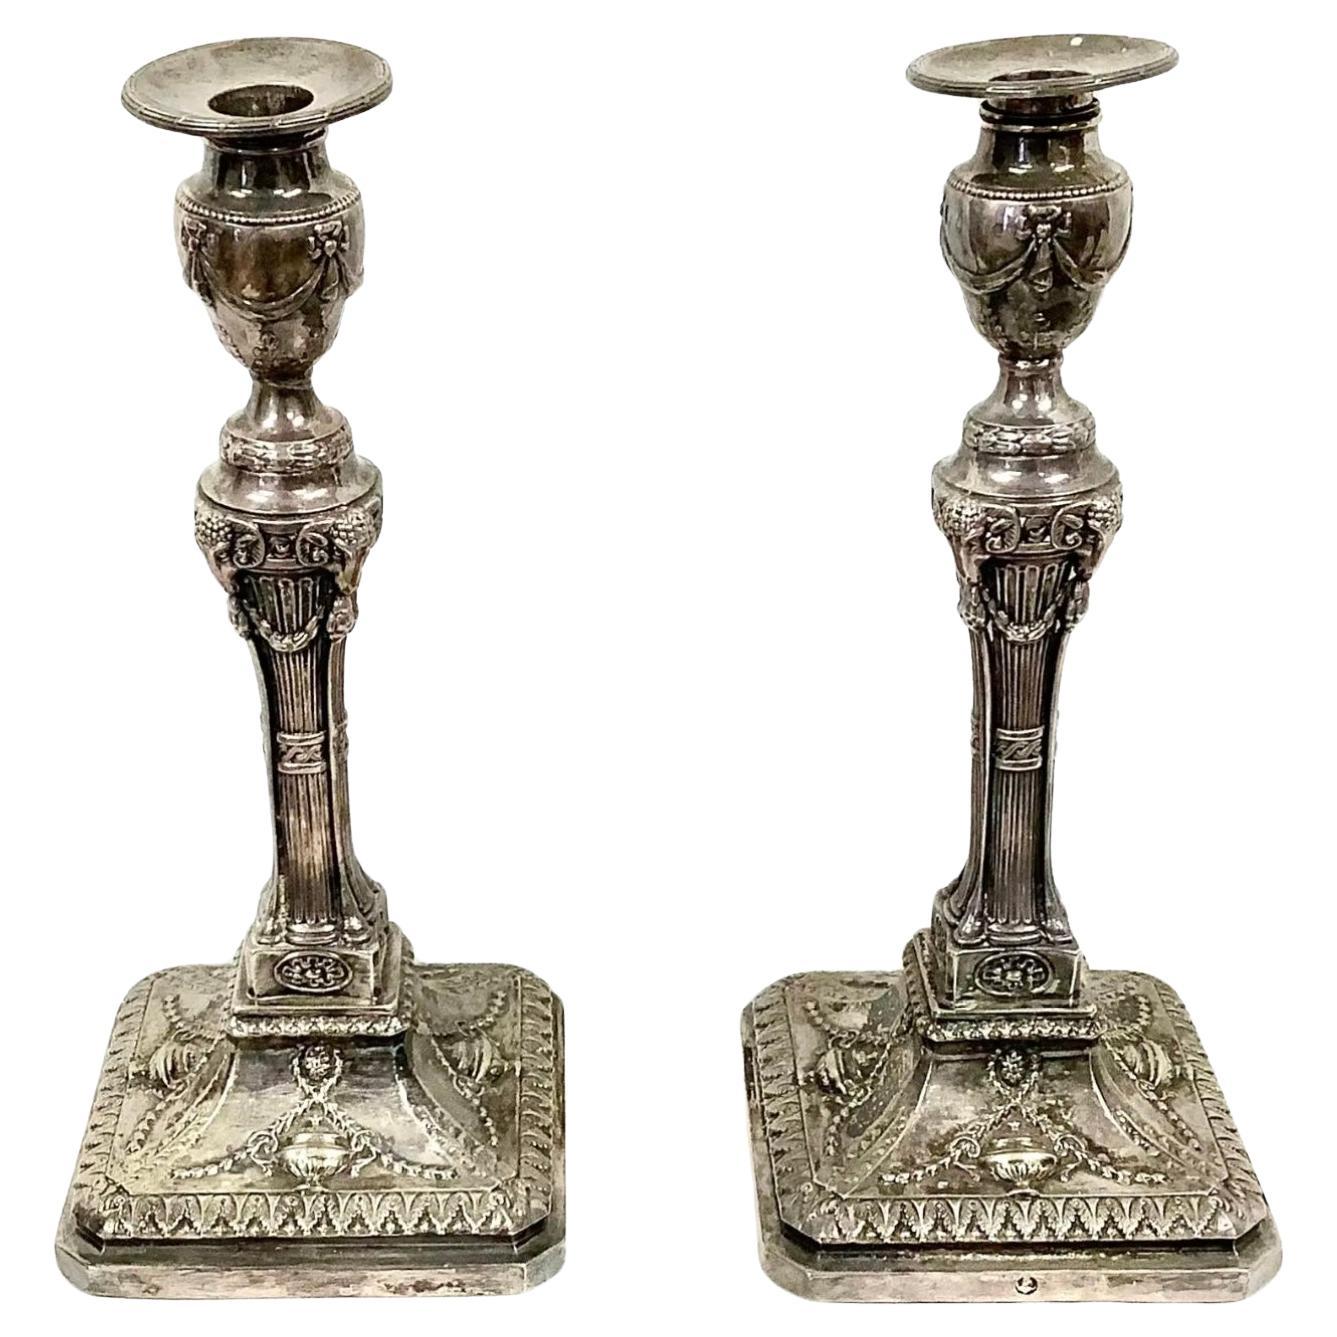 Paire de chandeliers géorgiens du 19ème siècle en métal argenté